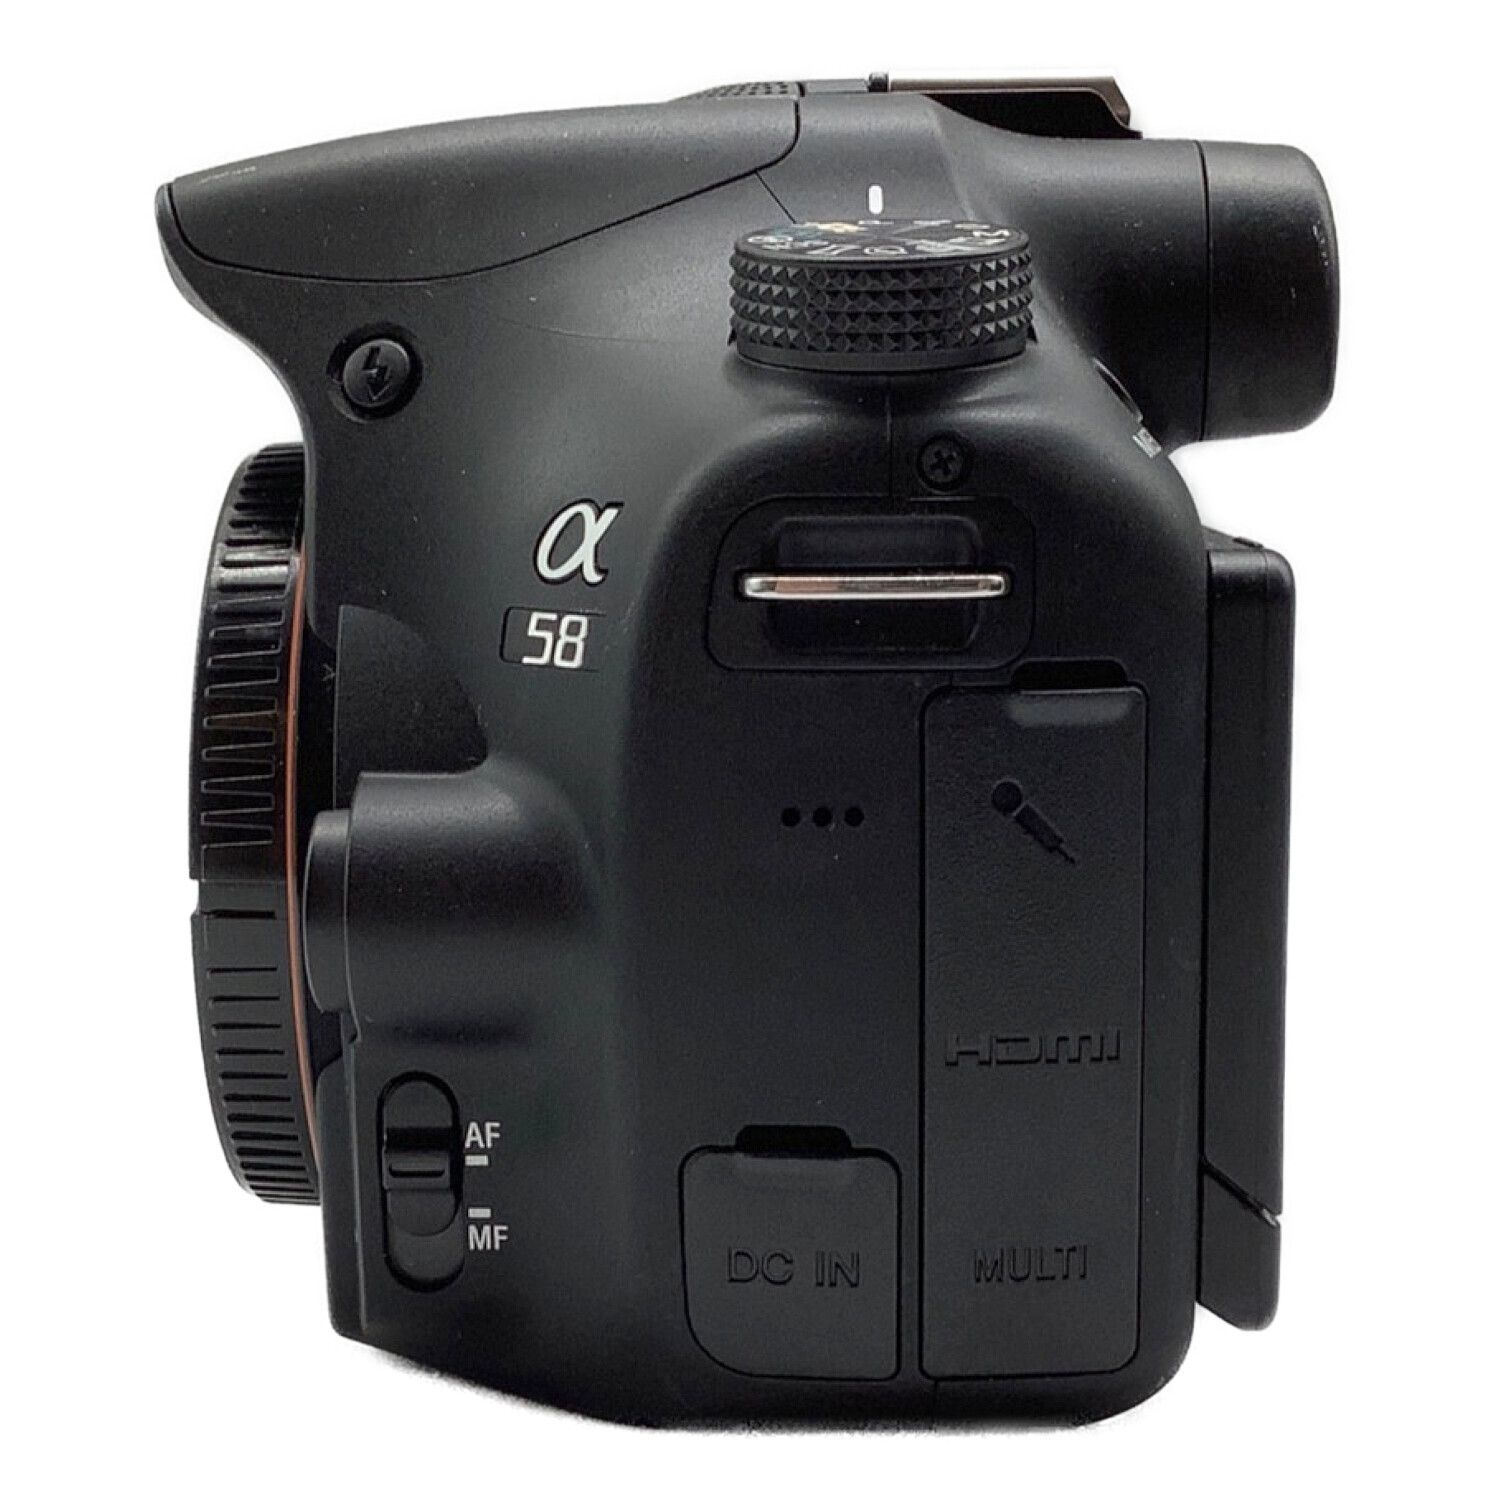 SONY (ソニー) デジタル一眼レフカメラ ズームレンズキット SLT-a58